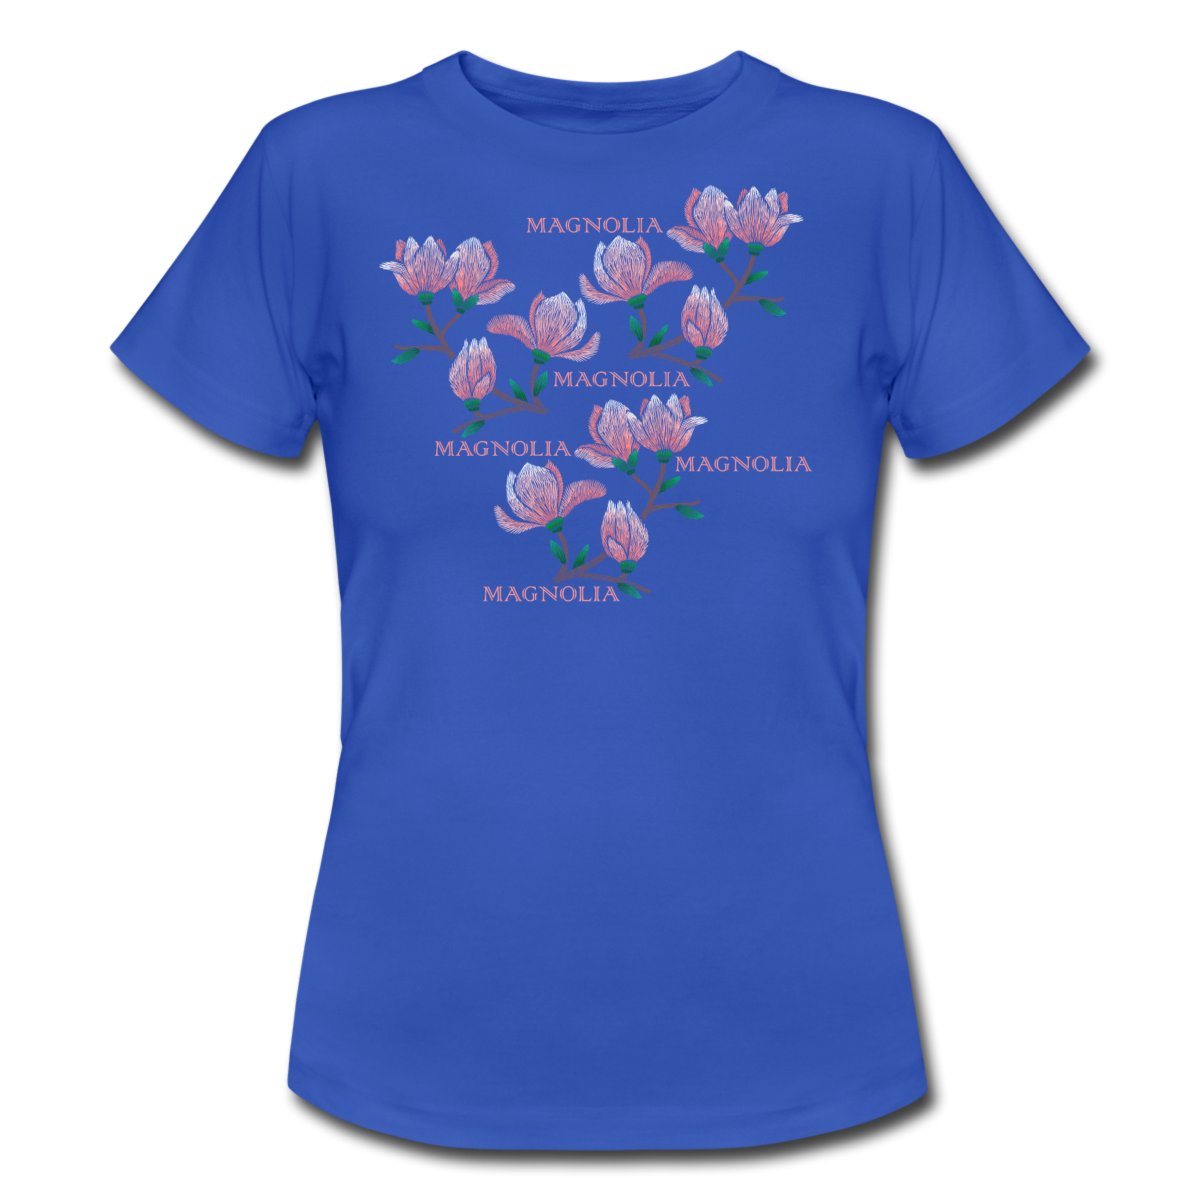 magnolia-t-shirt-damb.jpg